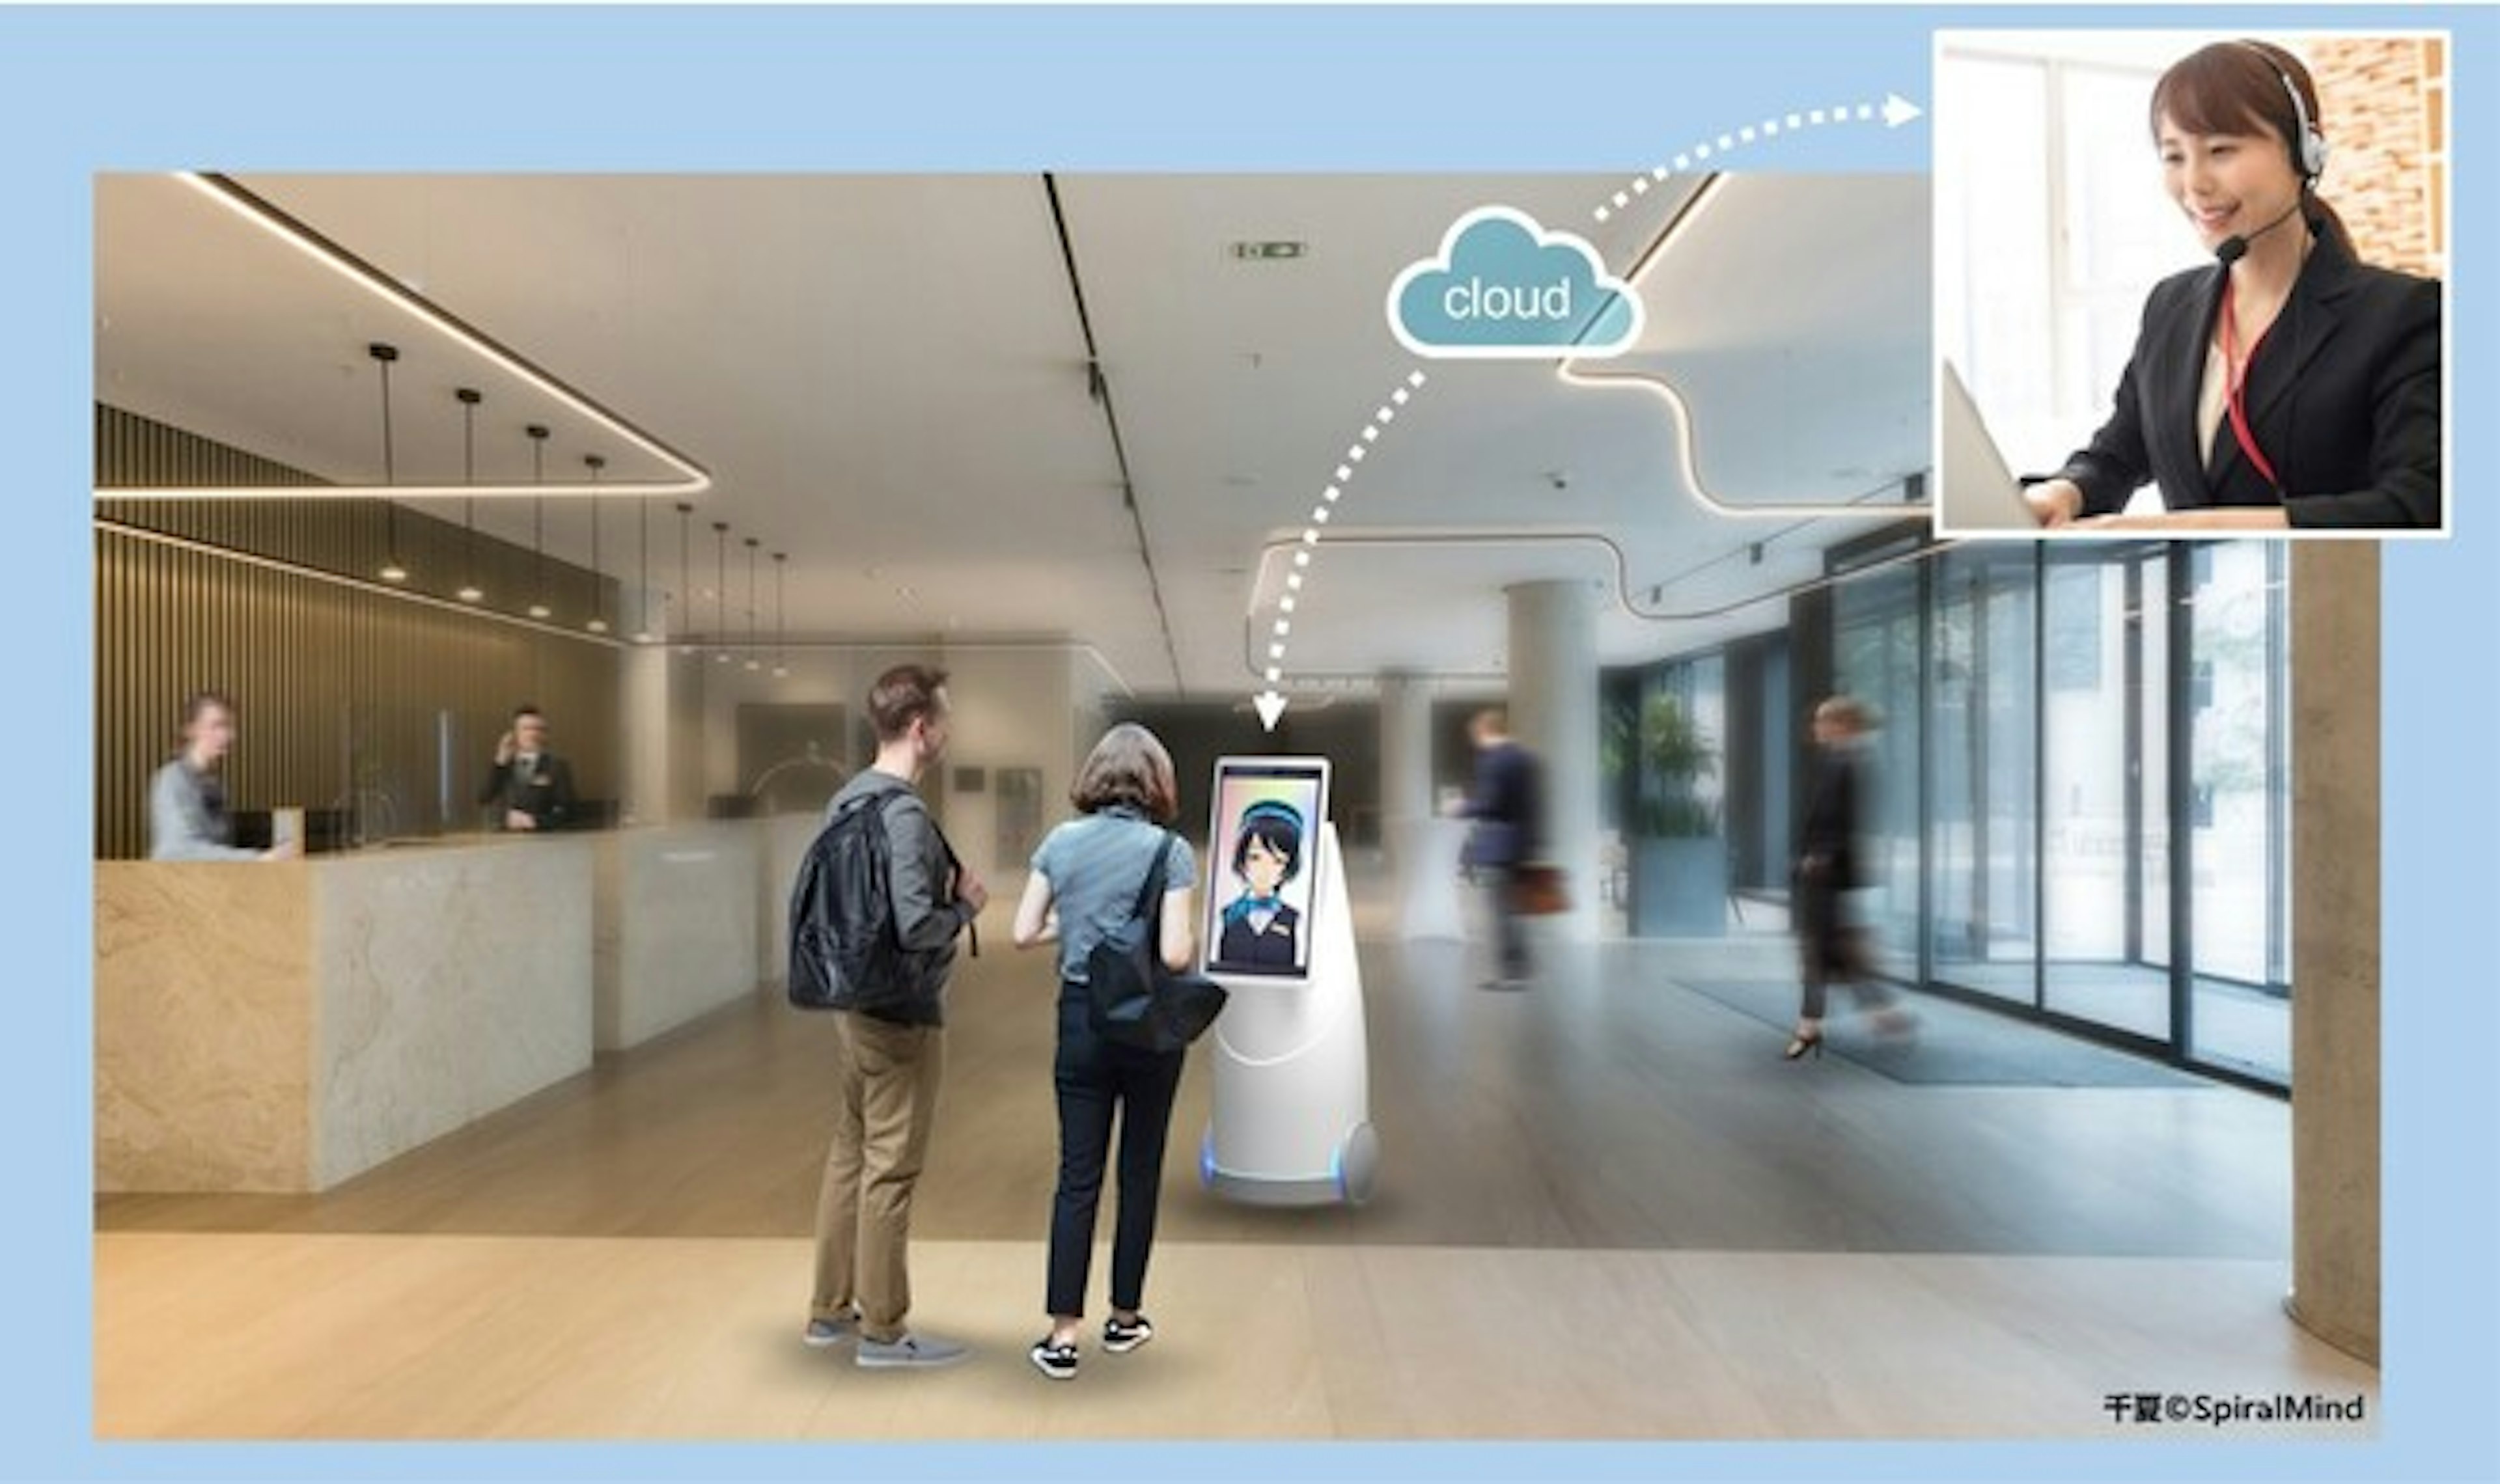 DFA Robotics、ultimatrust・スピンと共にサービスロボットを起点とした顧客体験価値の創出を目的に3社協業を開始
ロボット×アバター×デジタルツインを強みにプロダクト開発、5⽉30・31⽇に東京ビックサイトで開催の「ホテル開発＆リニューアルフェア」にて初公開